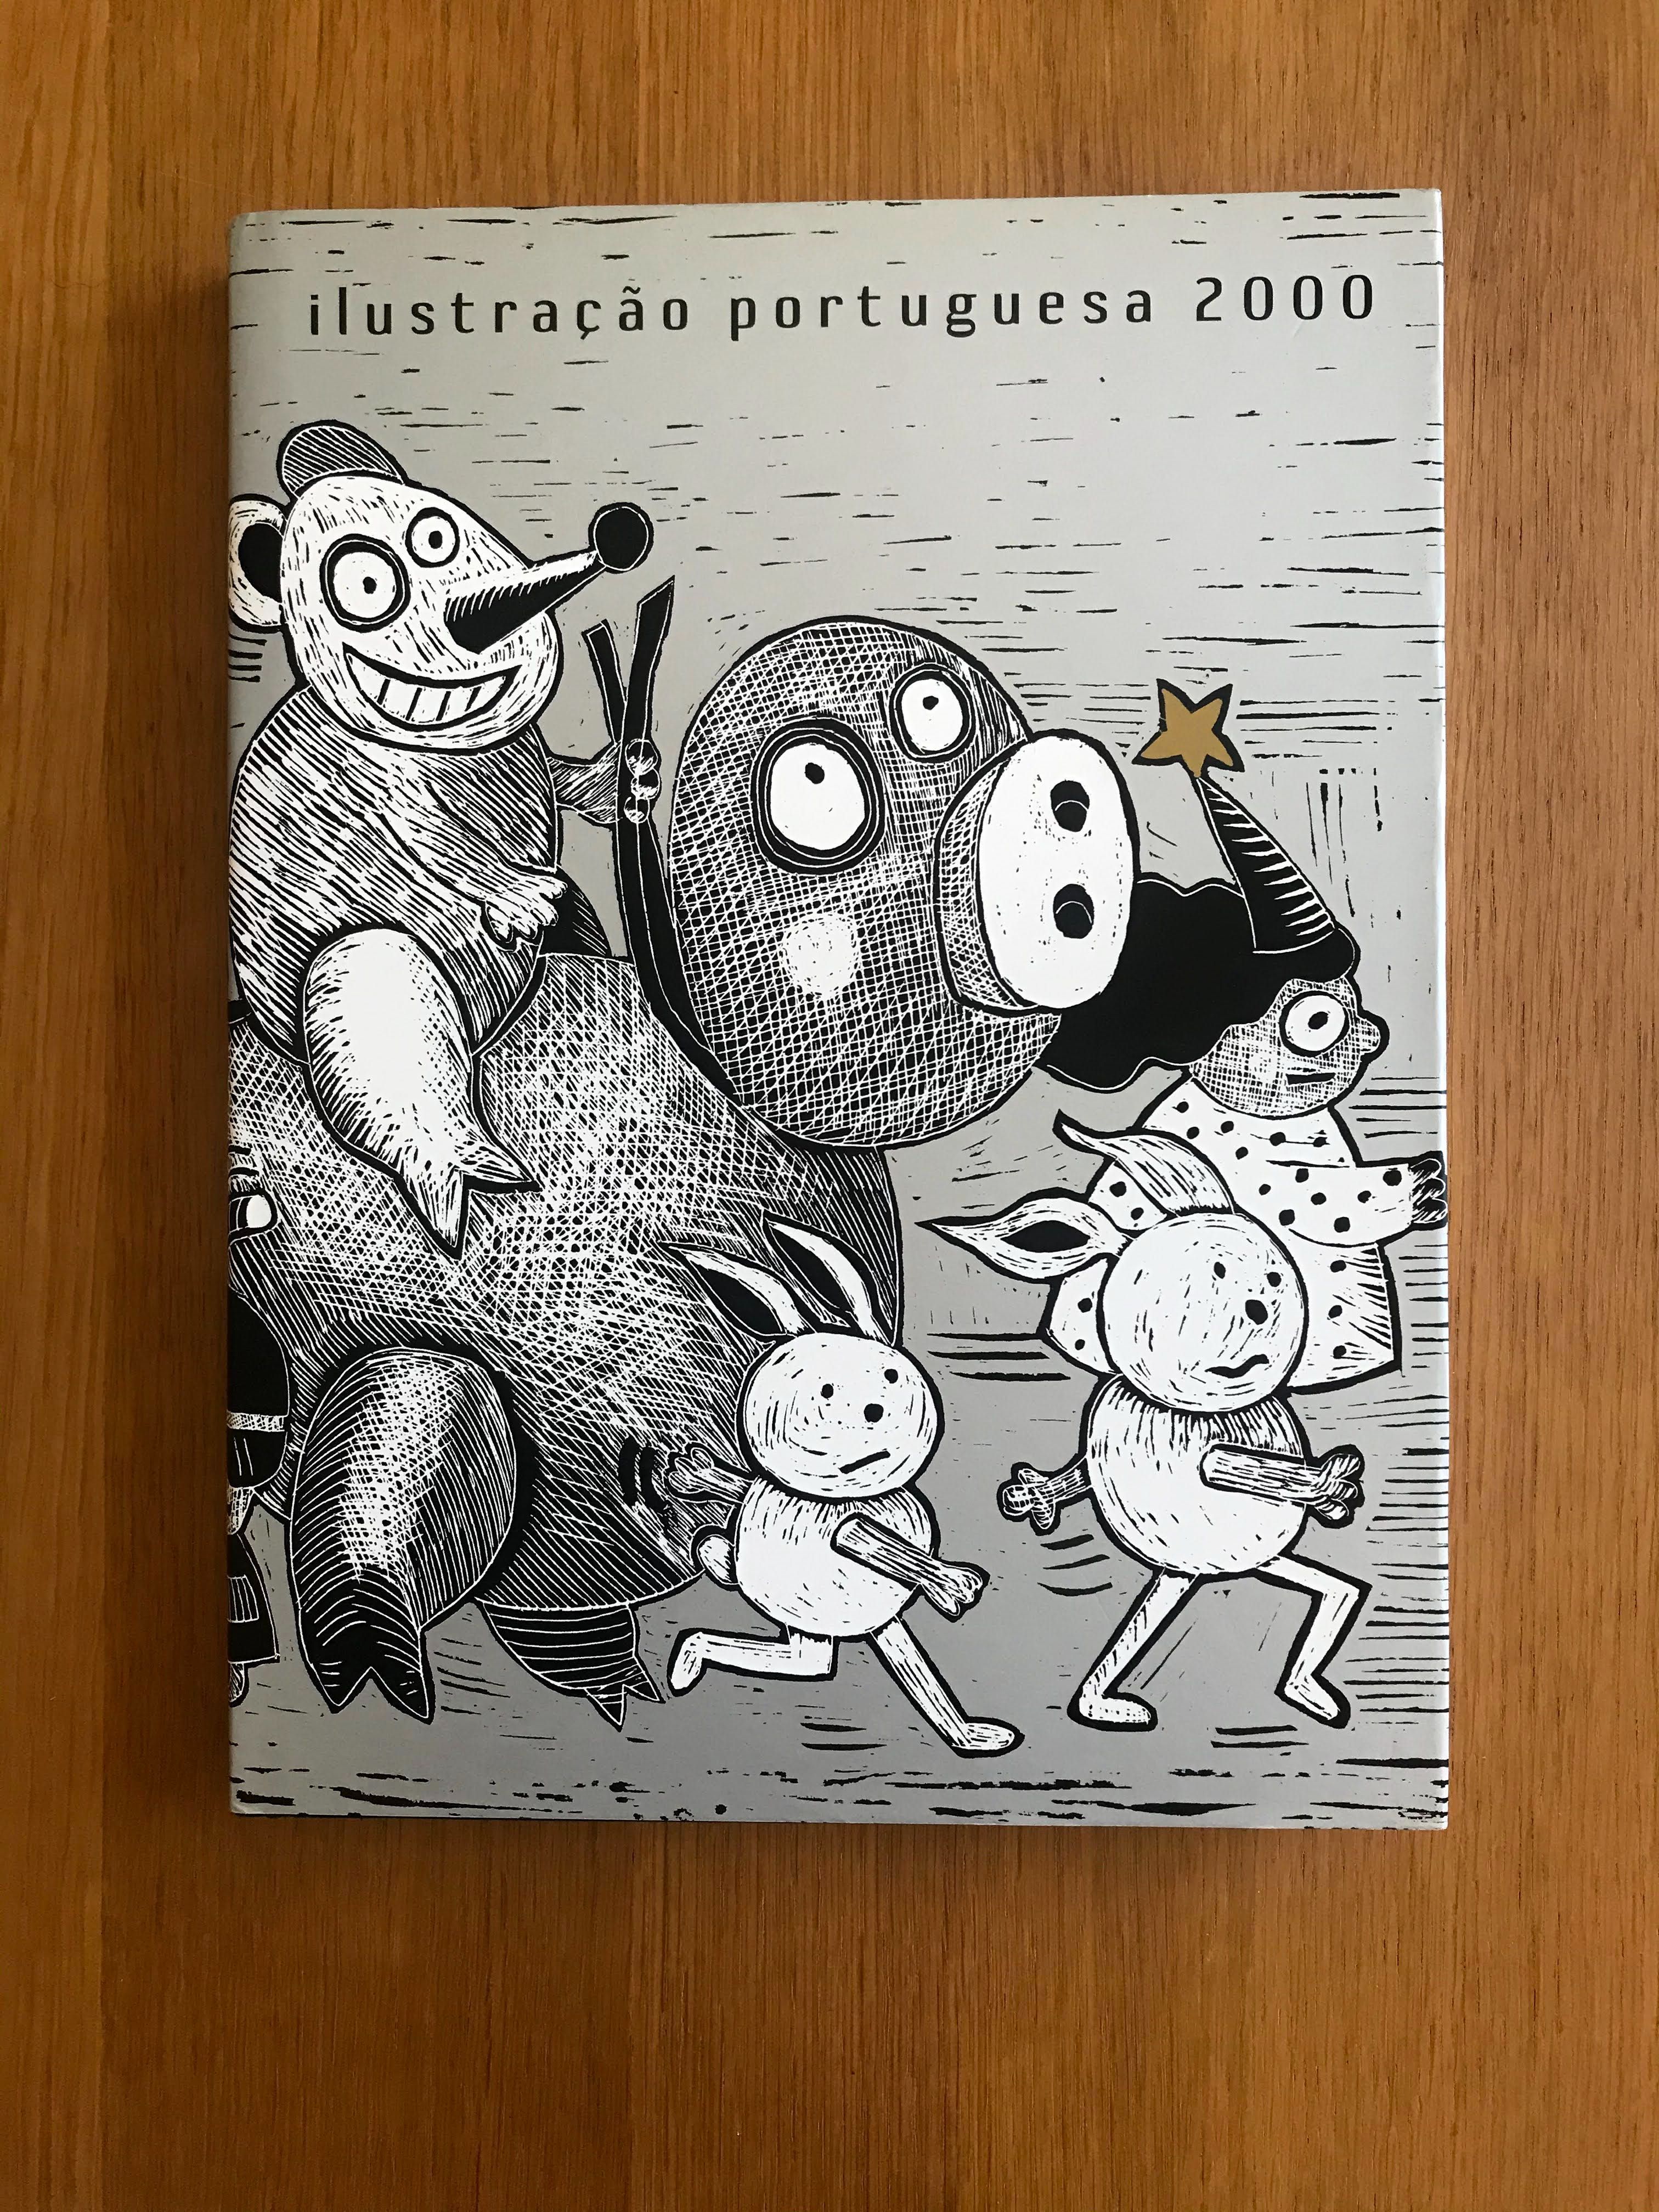 Catálogos Ilustração Portuguesa [Bedeteca]